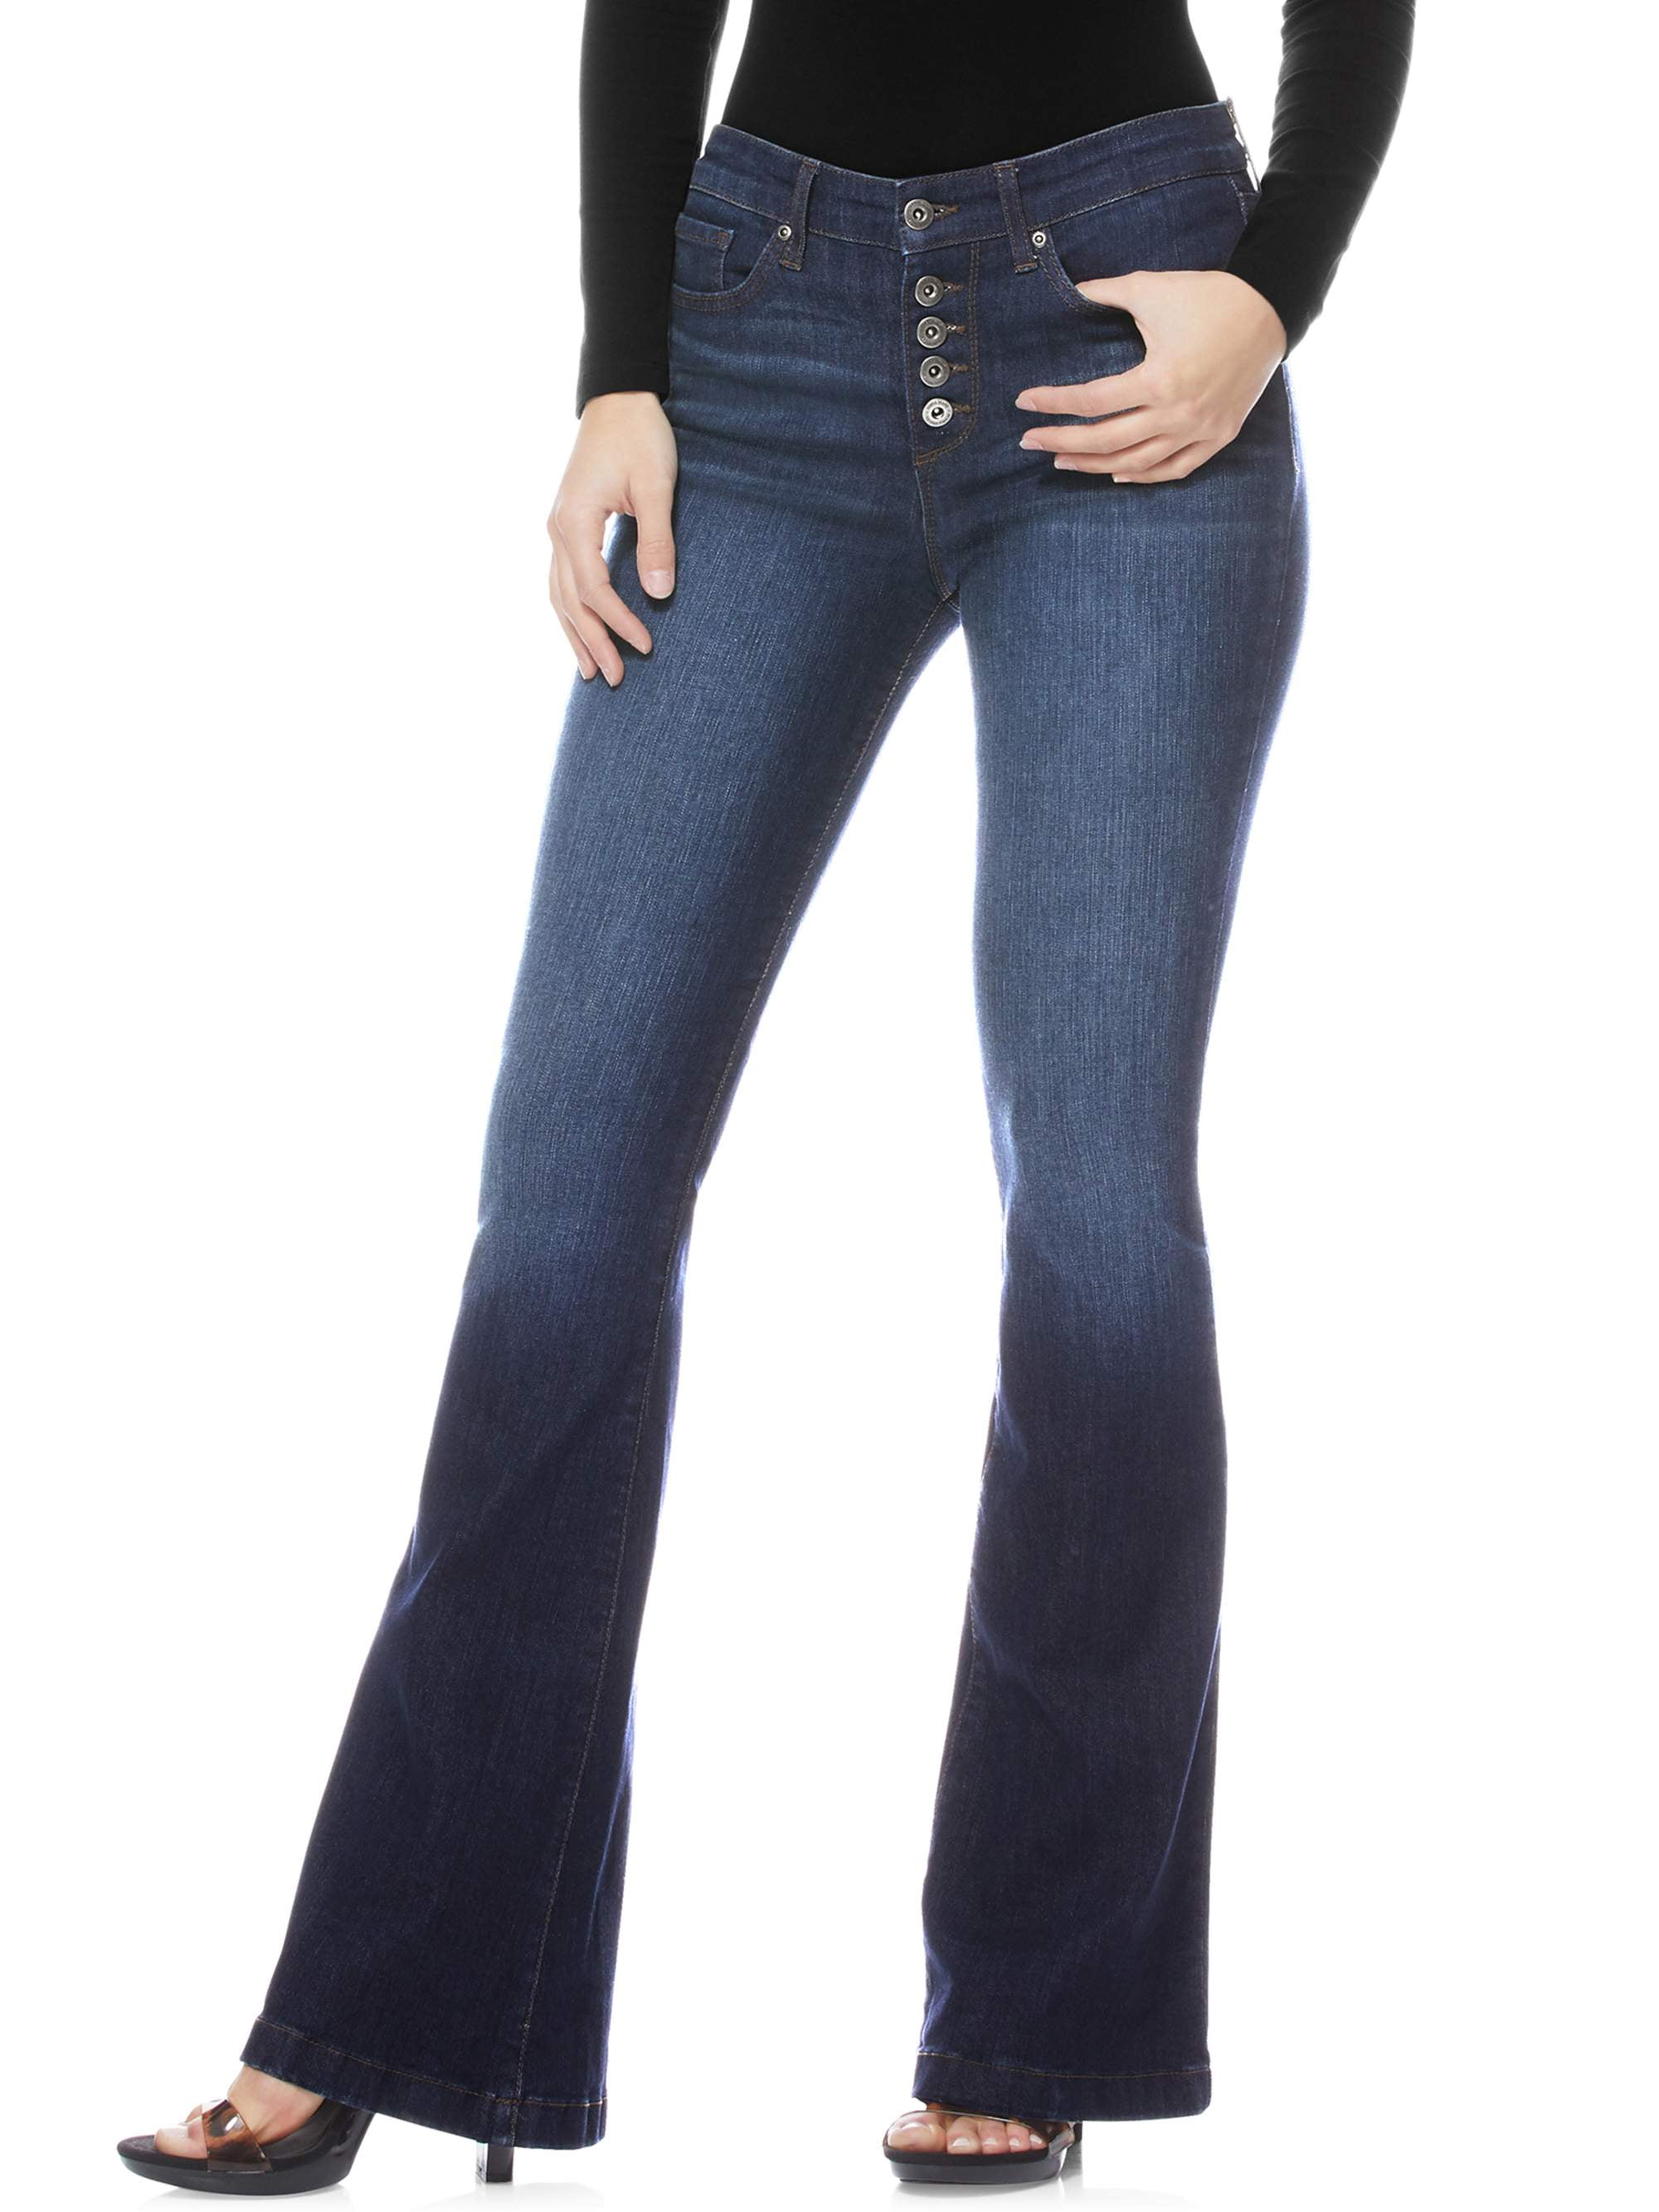 sophia jeans walmart